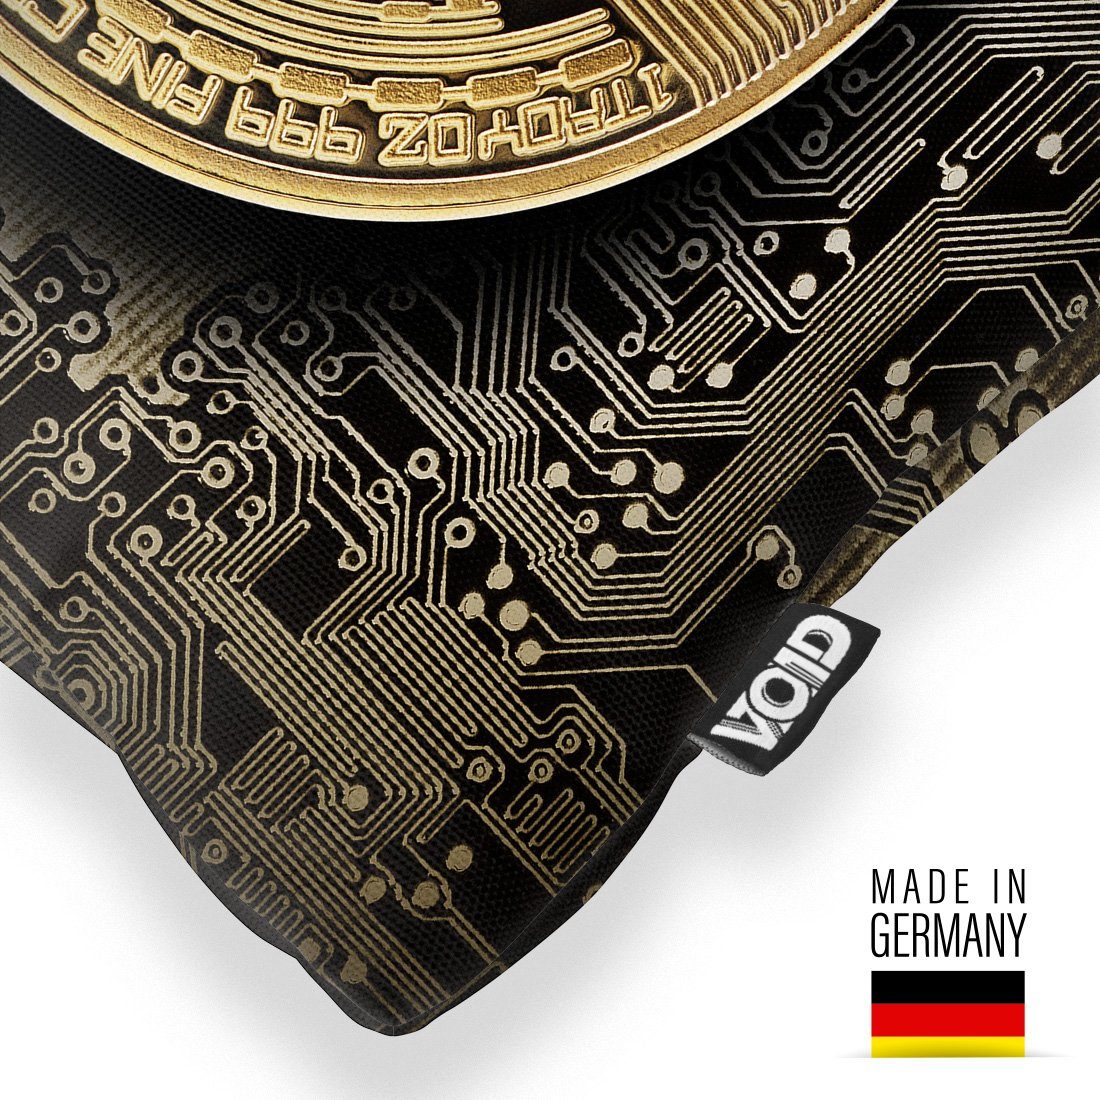 Münze Sofa-Kissen Wertanlage Investieren Geld Digital Coin Stück), berechnen VOID Aktien Währung (1 Crypto Krypto Bitcoin Kissenbezug, Blockchain Kurs lernen Gold Finanzen